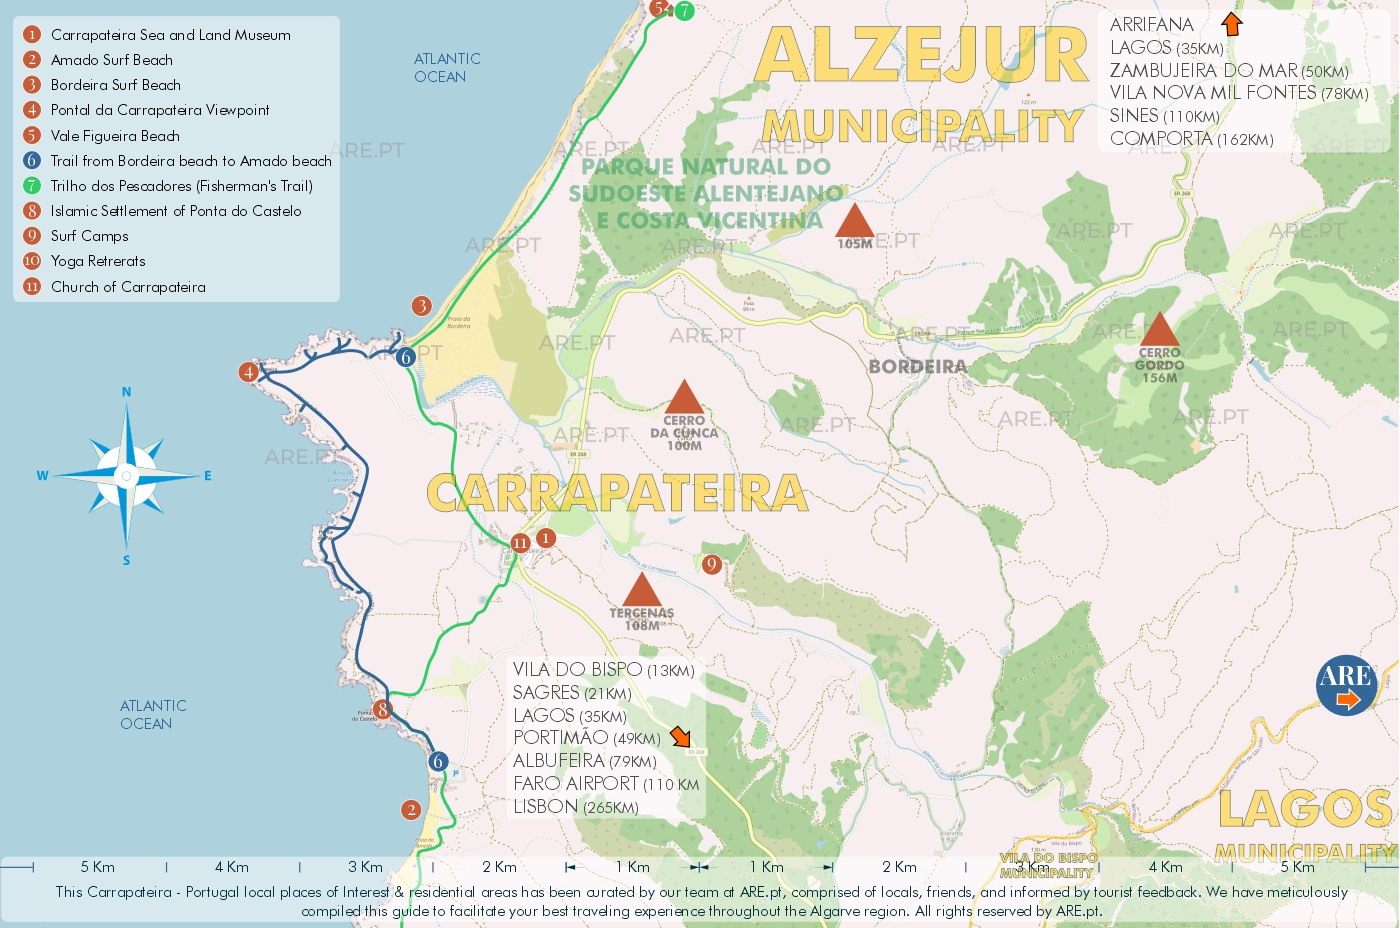 Carte de Carrapateira et de ses environs, avec les principaux points d'intérêt, les emplacements utiles et les zones résidentielles. Distances des principaux sites du sud du Portugal